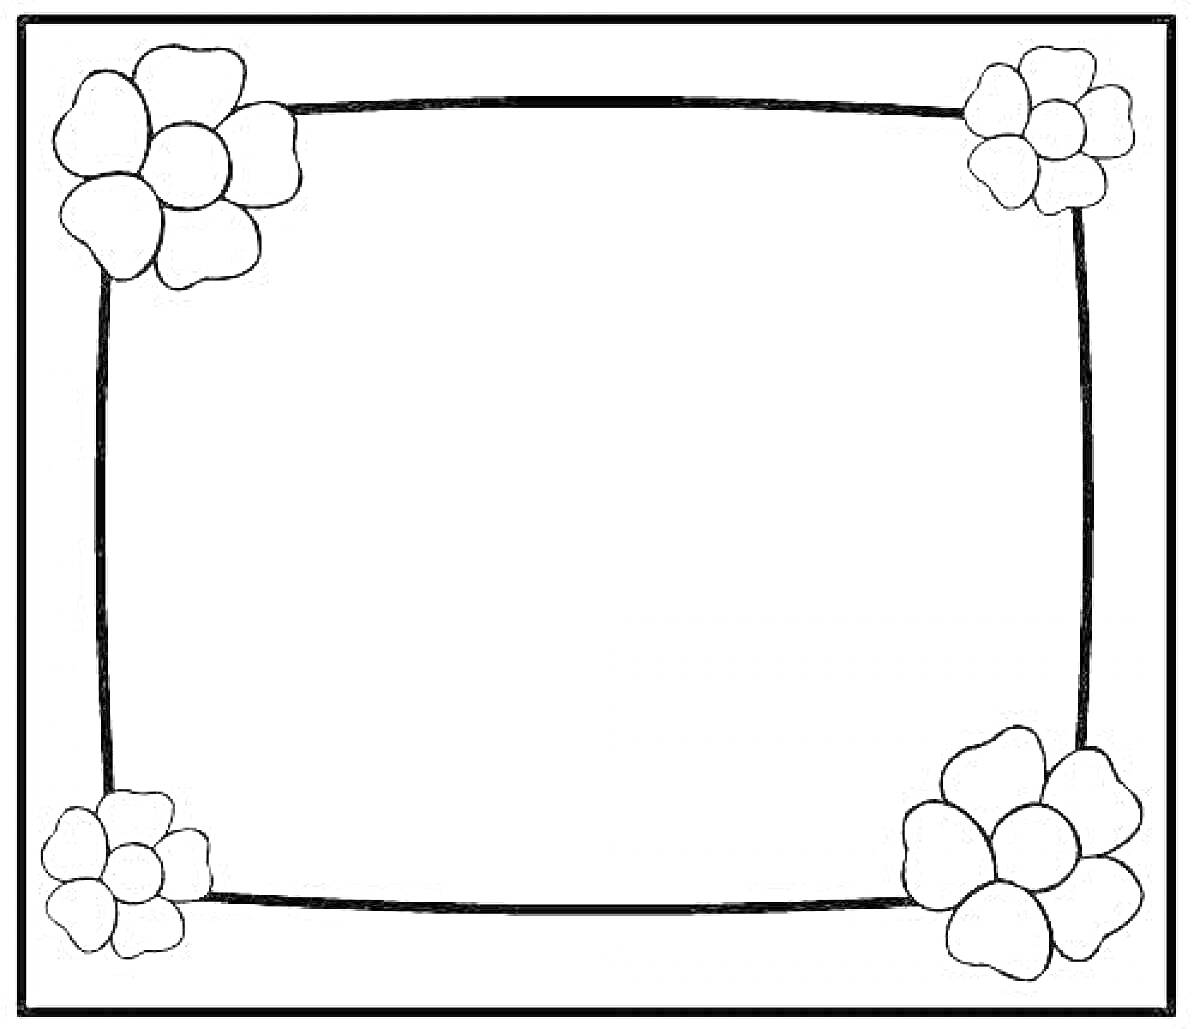 Раскраска рамка с четырьмя цветами по углам